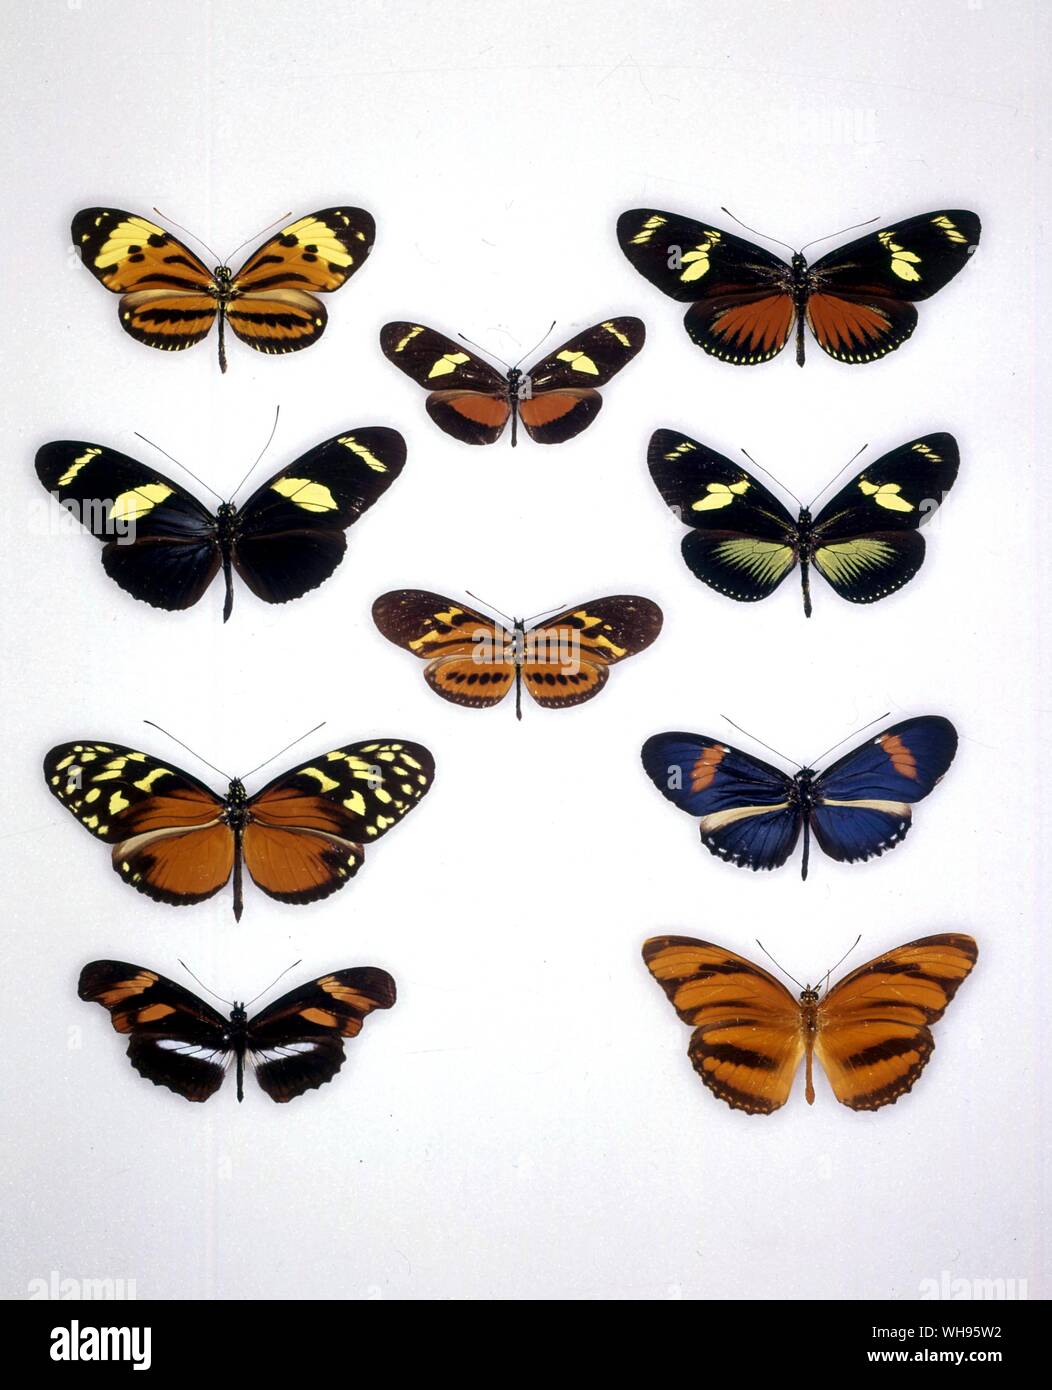 Papillons papillons/- (de gauche à droite), ethillus recini Antirrhaea Antirrhaea, Heliconius doris, Heliconius wallacei, Eueides isabella, Heliconius doris, Heliconius anderida, heliconius telesiphe Podotricha telesiphe, vulcanus, Dryadula phaetusa Banque D'Images